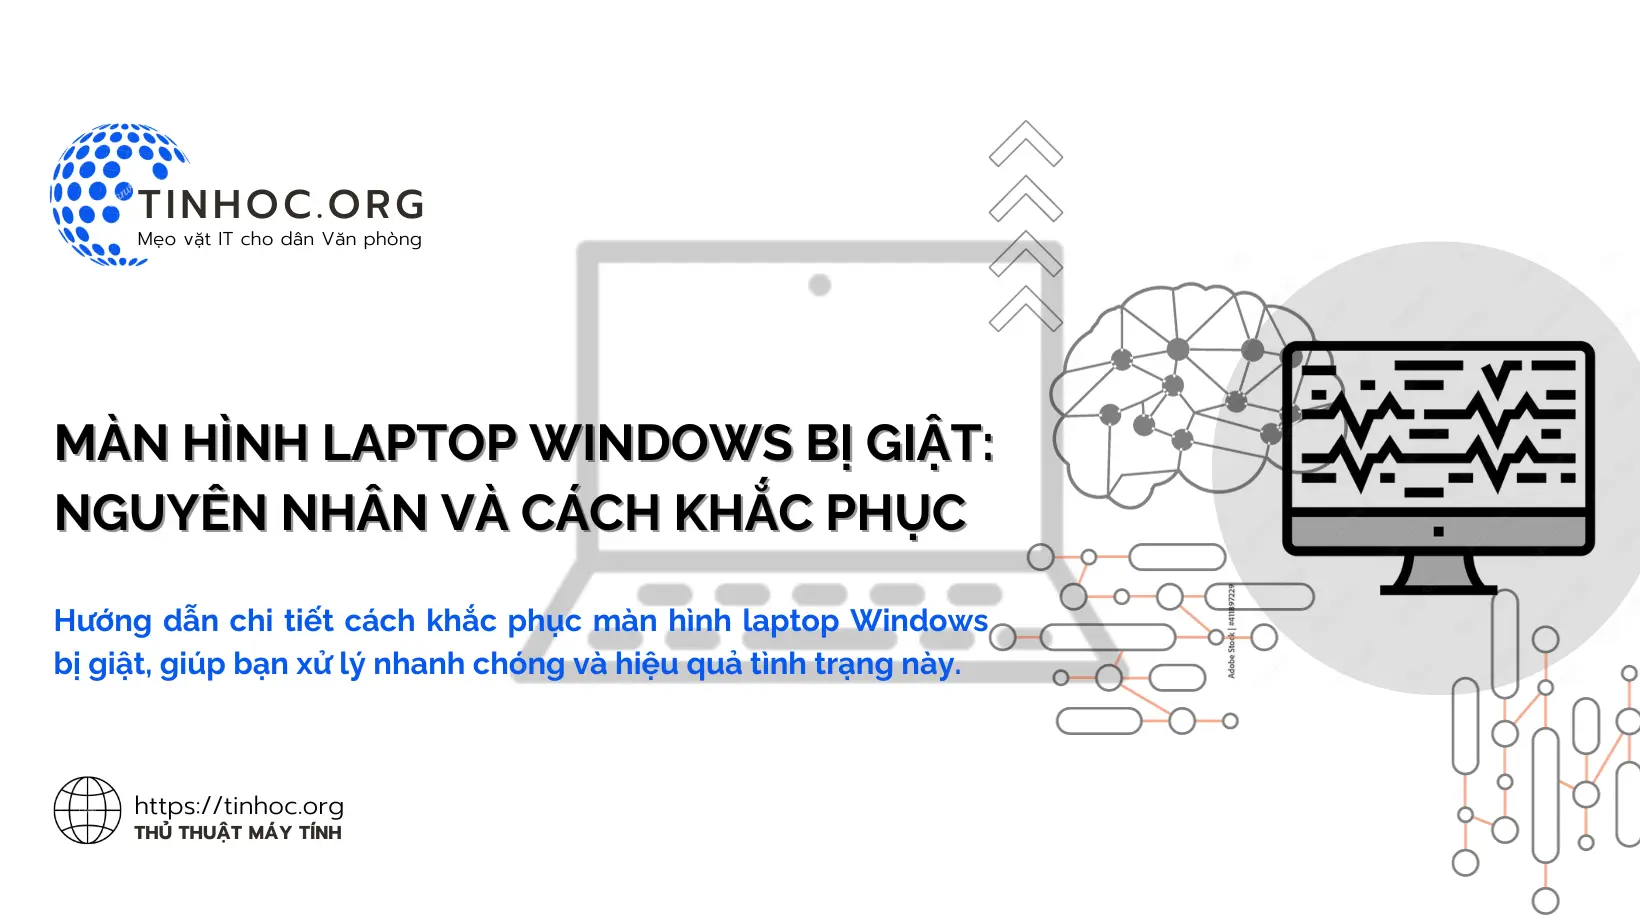 Hướng dẫn chi tiết cách khắc phục màn hình laptop Windows bị giật, giúp bạn xử lý nhanh chóng và hiệu quả tình trạng này.